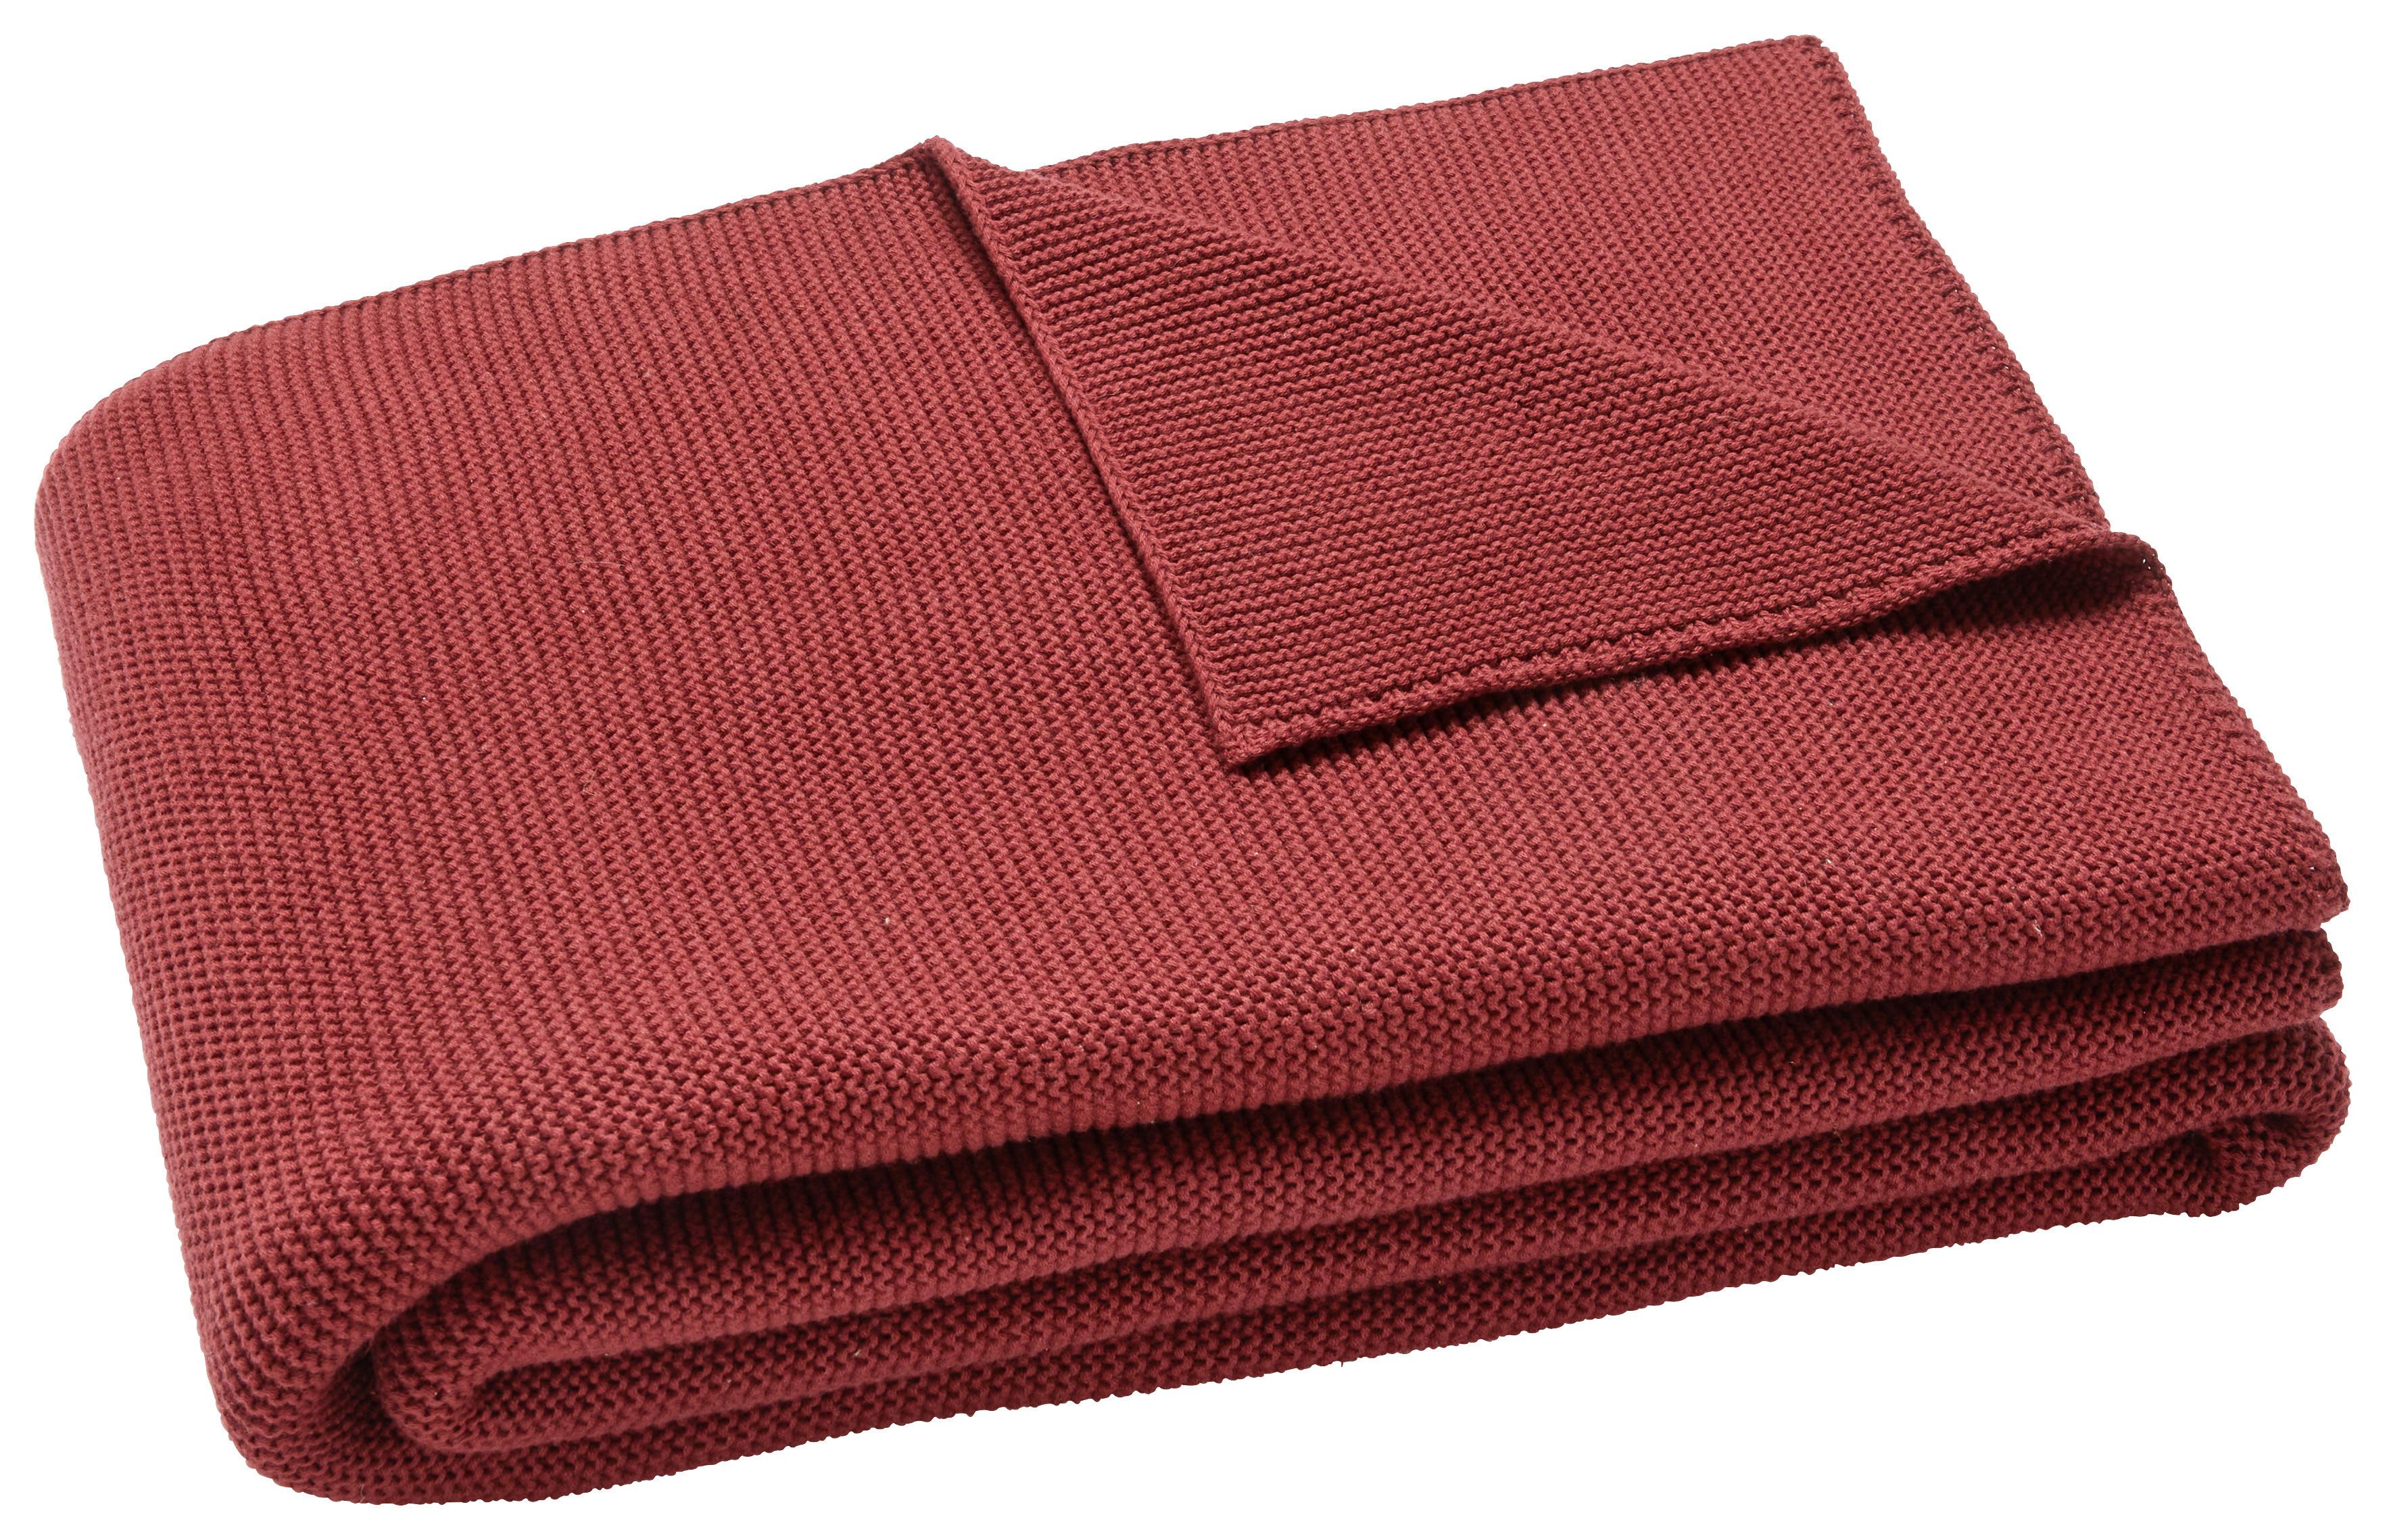 Odeja Ines - vinsko rdeča, Moderno, tekstil (130/170cm) - Premium Living